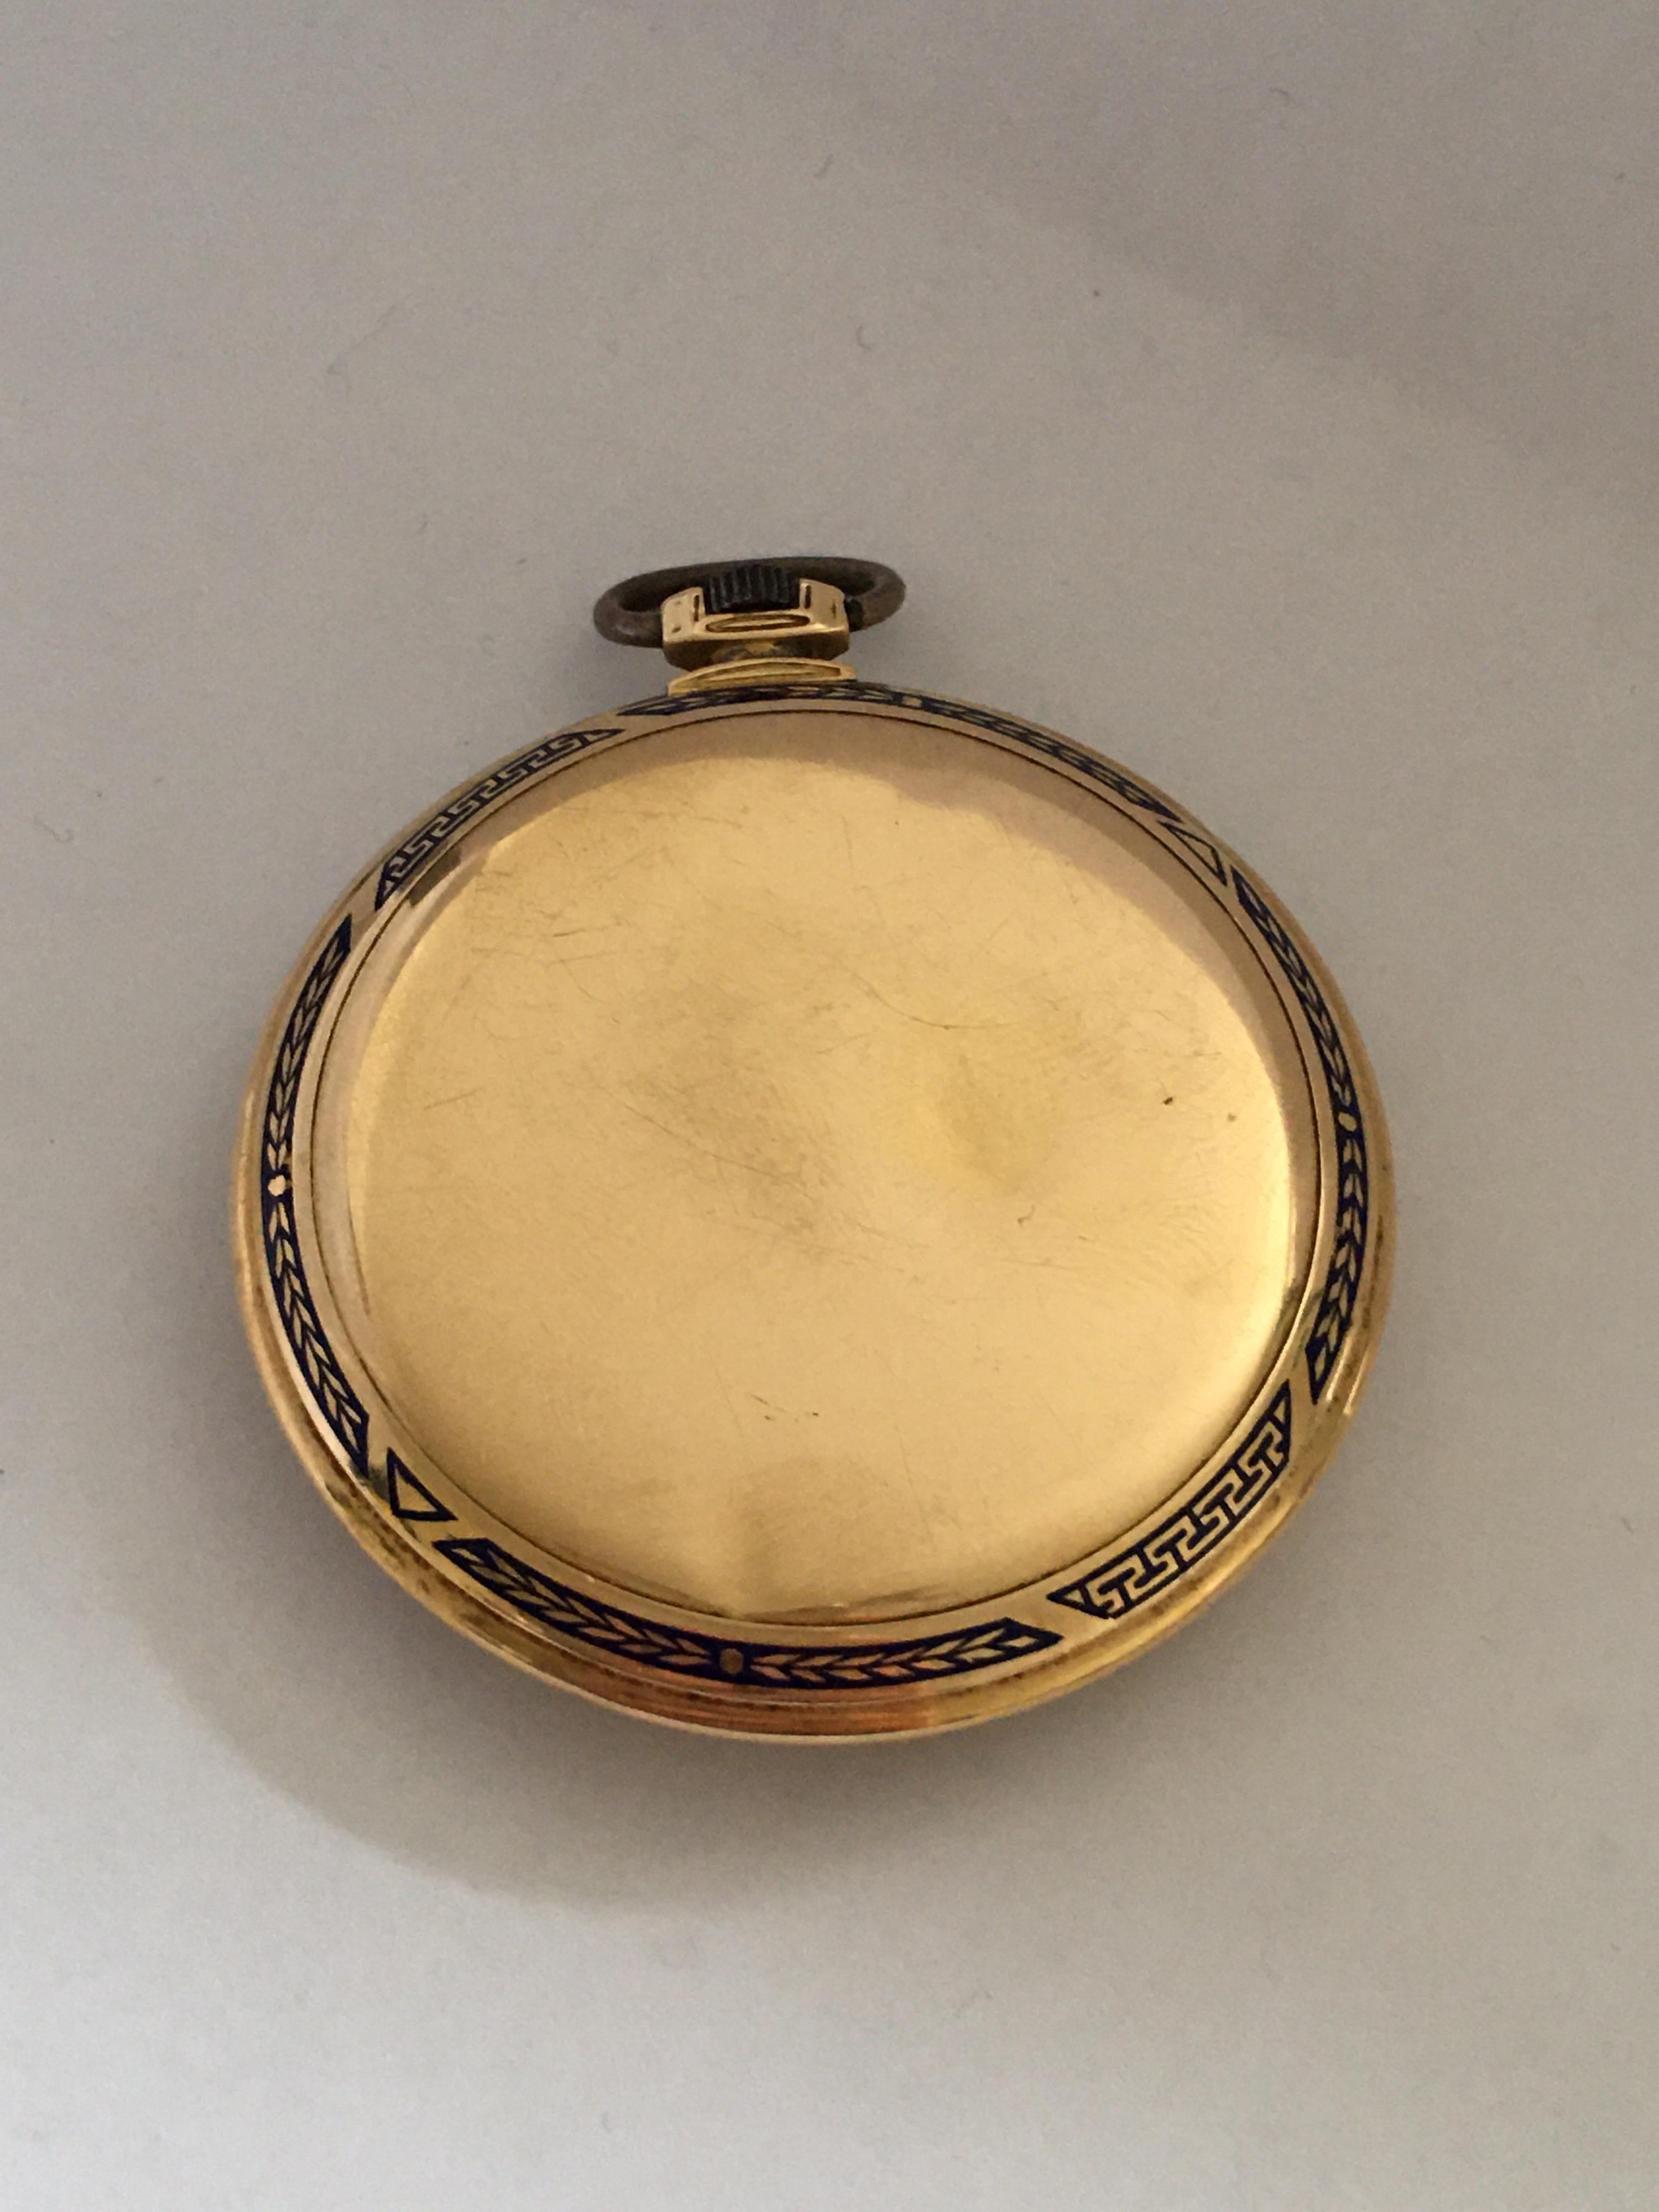 Antique 14 Karat Gold and Enamel Dress / Pocket Watch For Sale at 